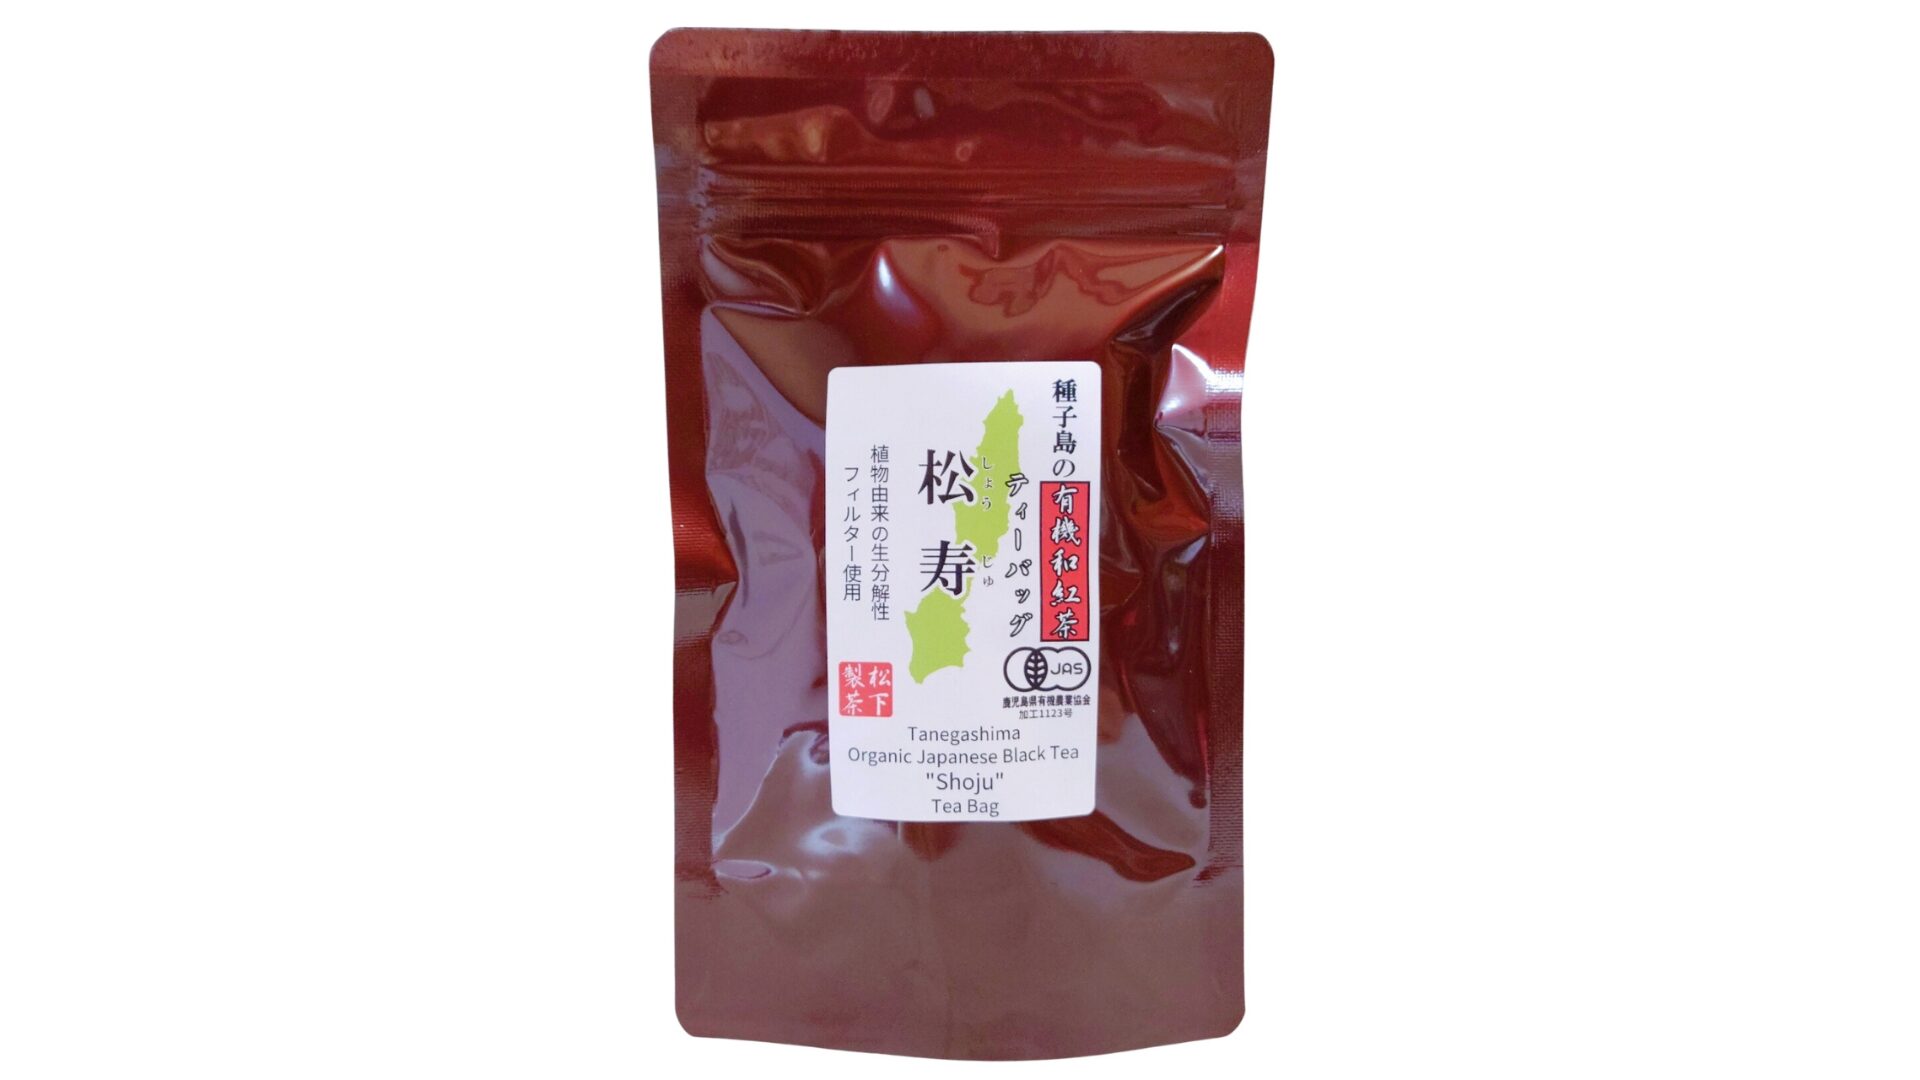 松下製茶 種子島の有機和紅茶ティーバッグ『松寿(しょうじゅ)』 40g(2.5g×16袋入り)